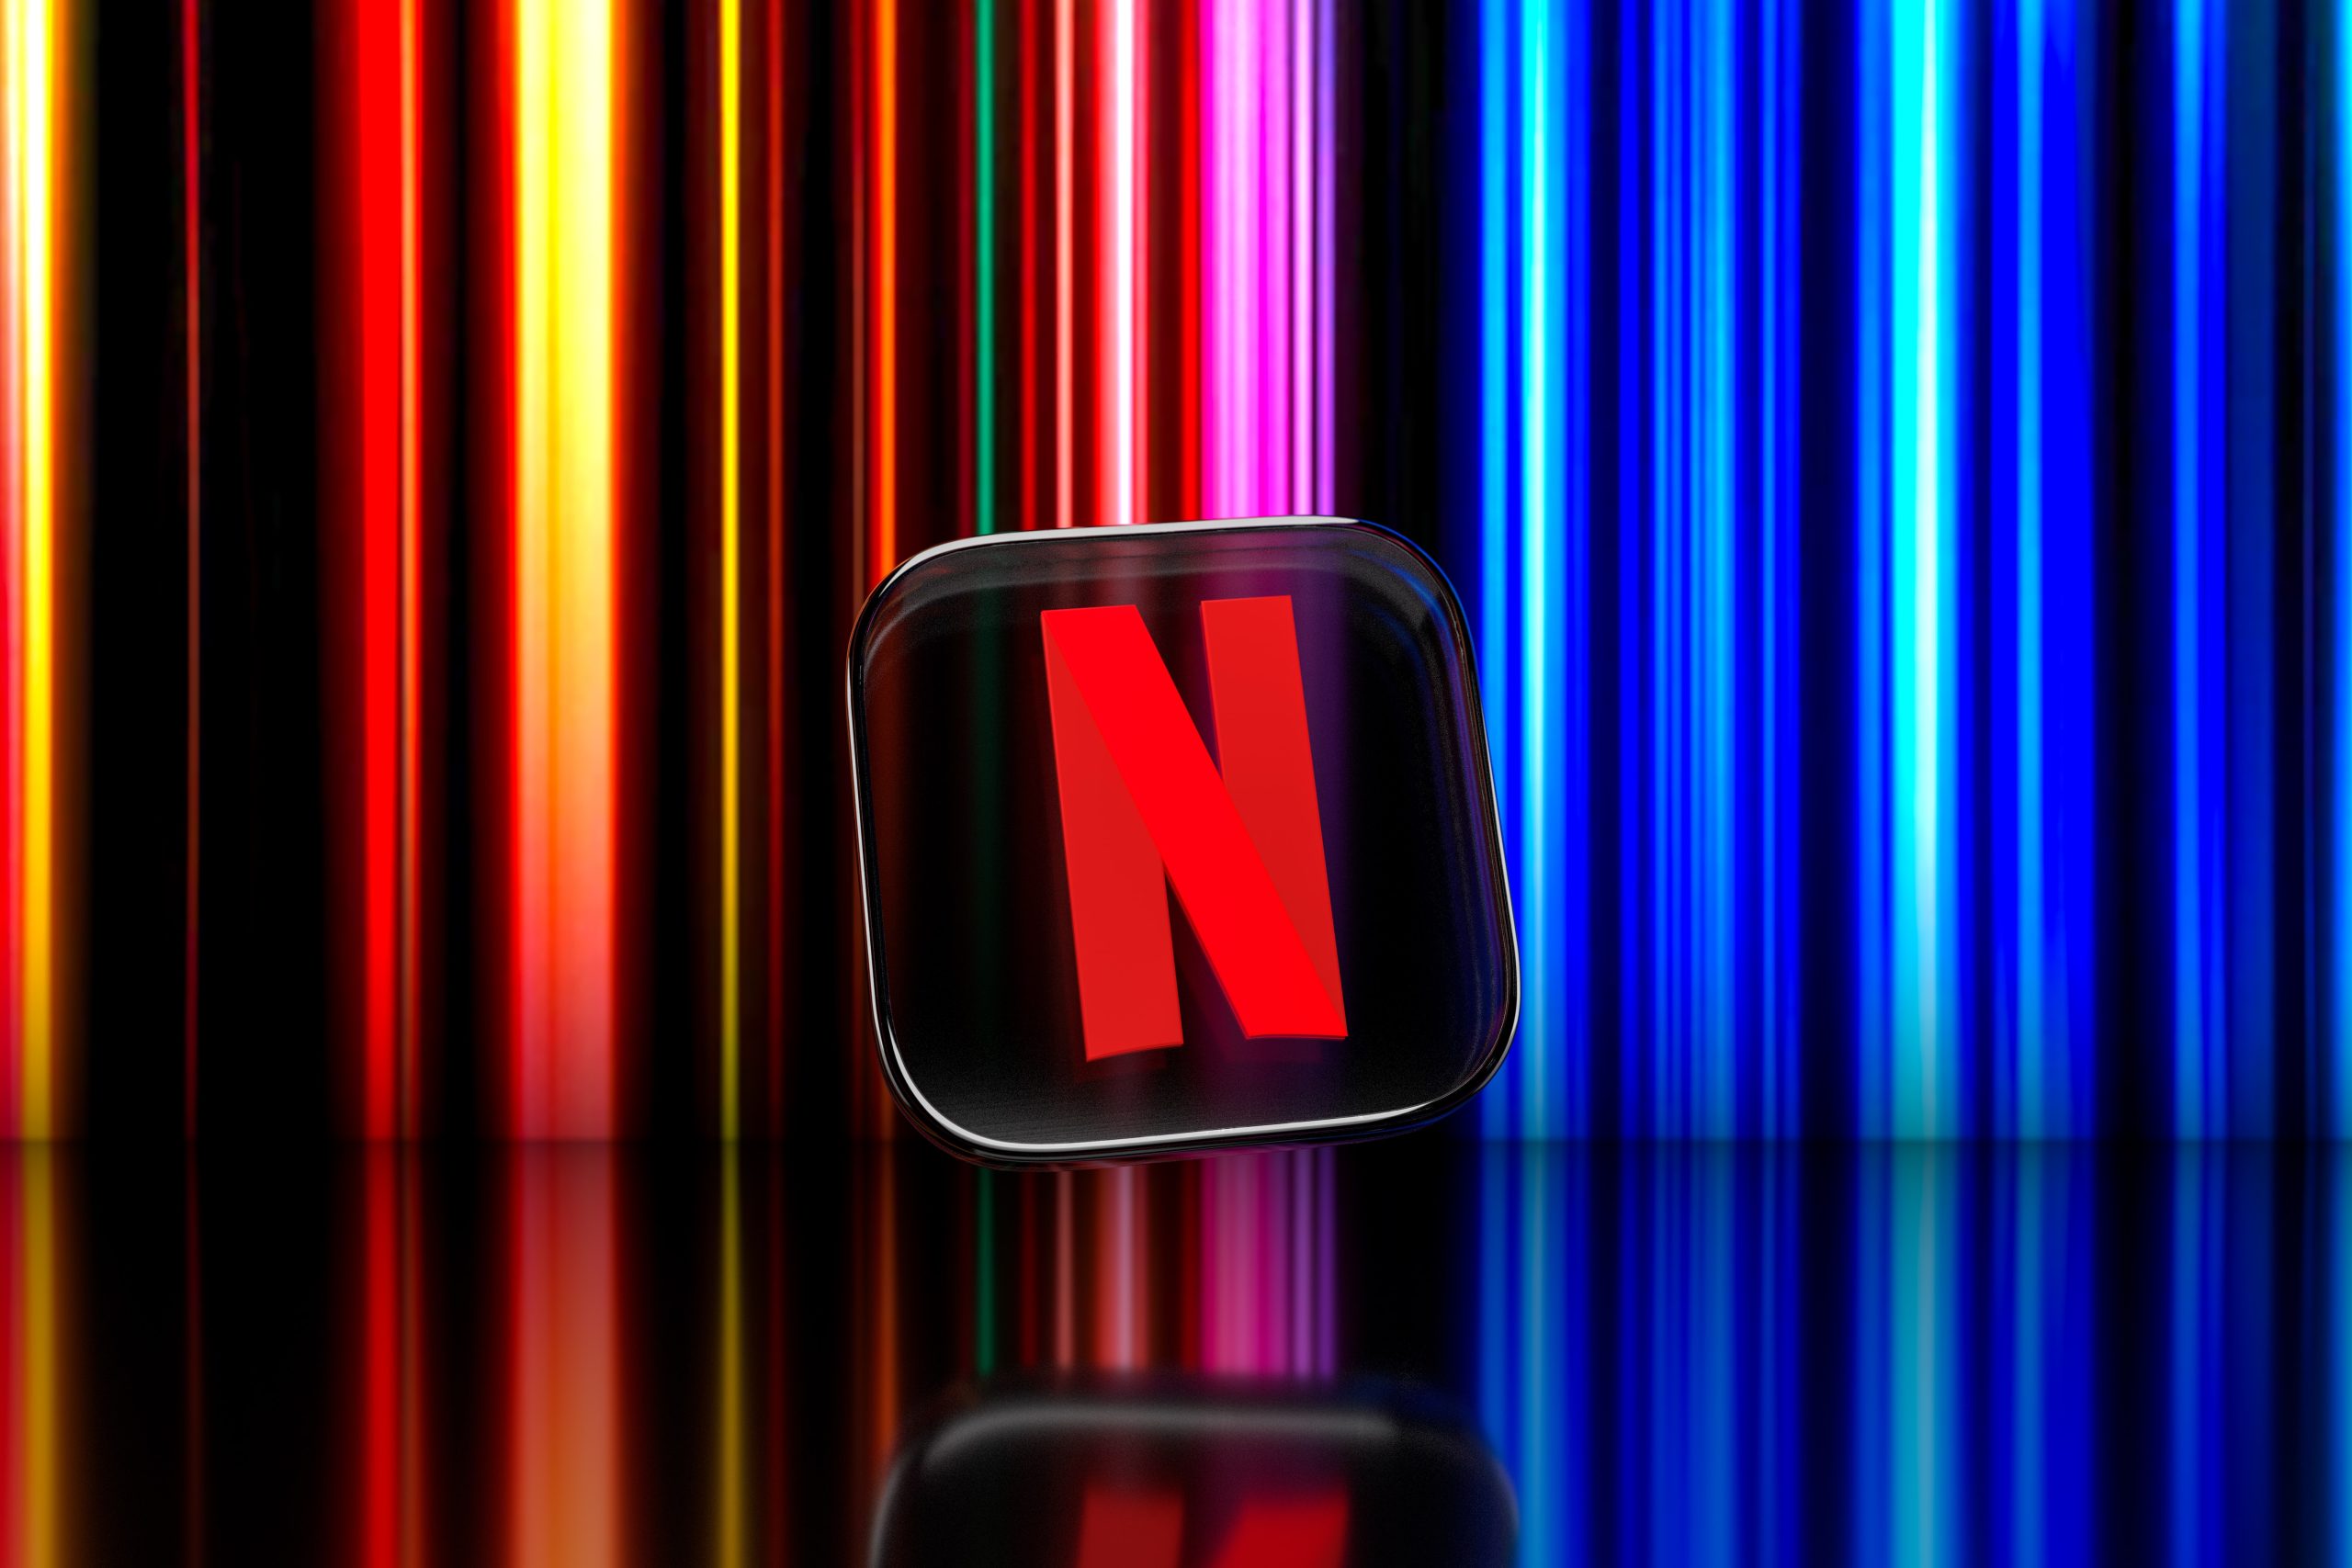 Netflix Kini Mempunyai 270 Juta Pelanggan Di Seluruh Dunia